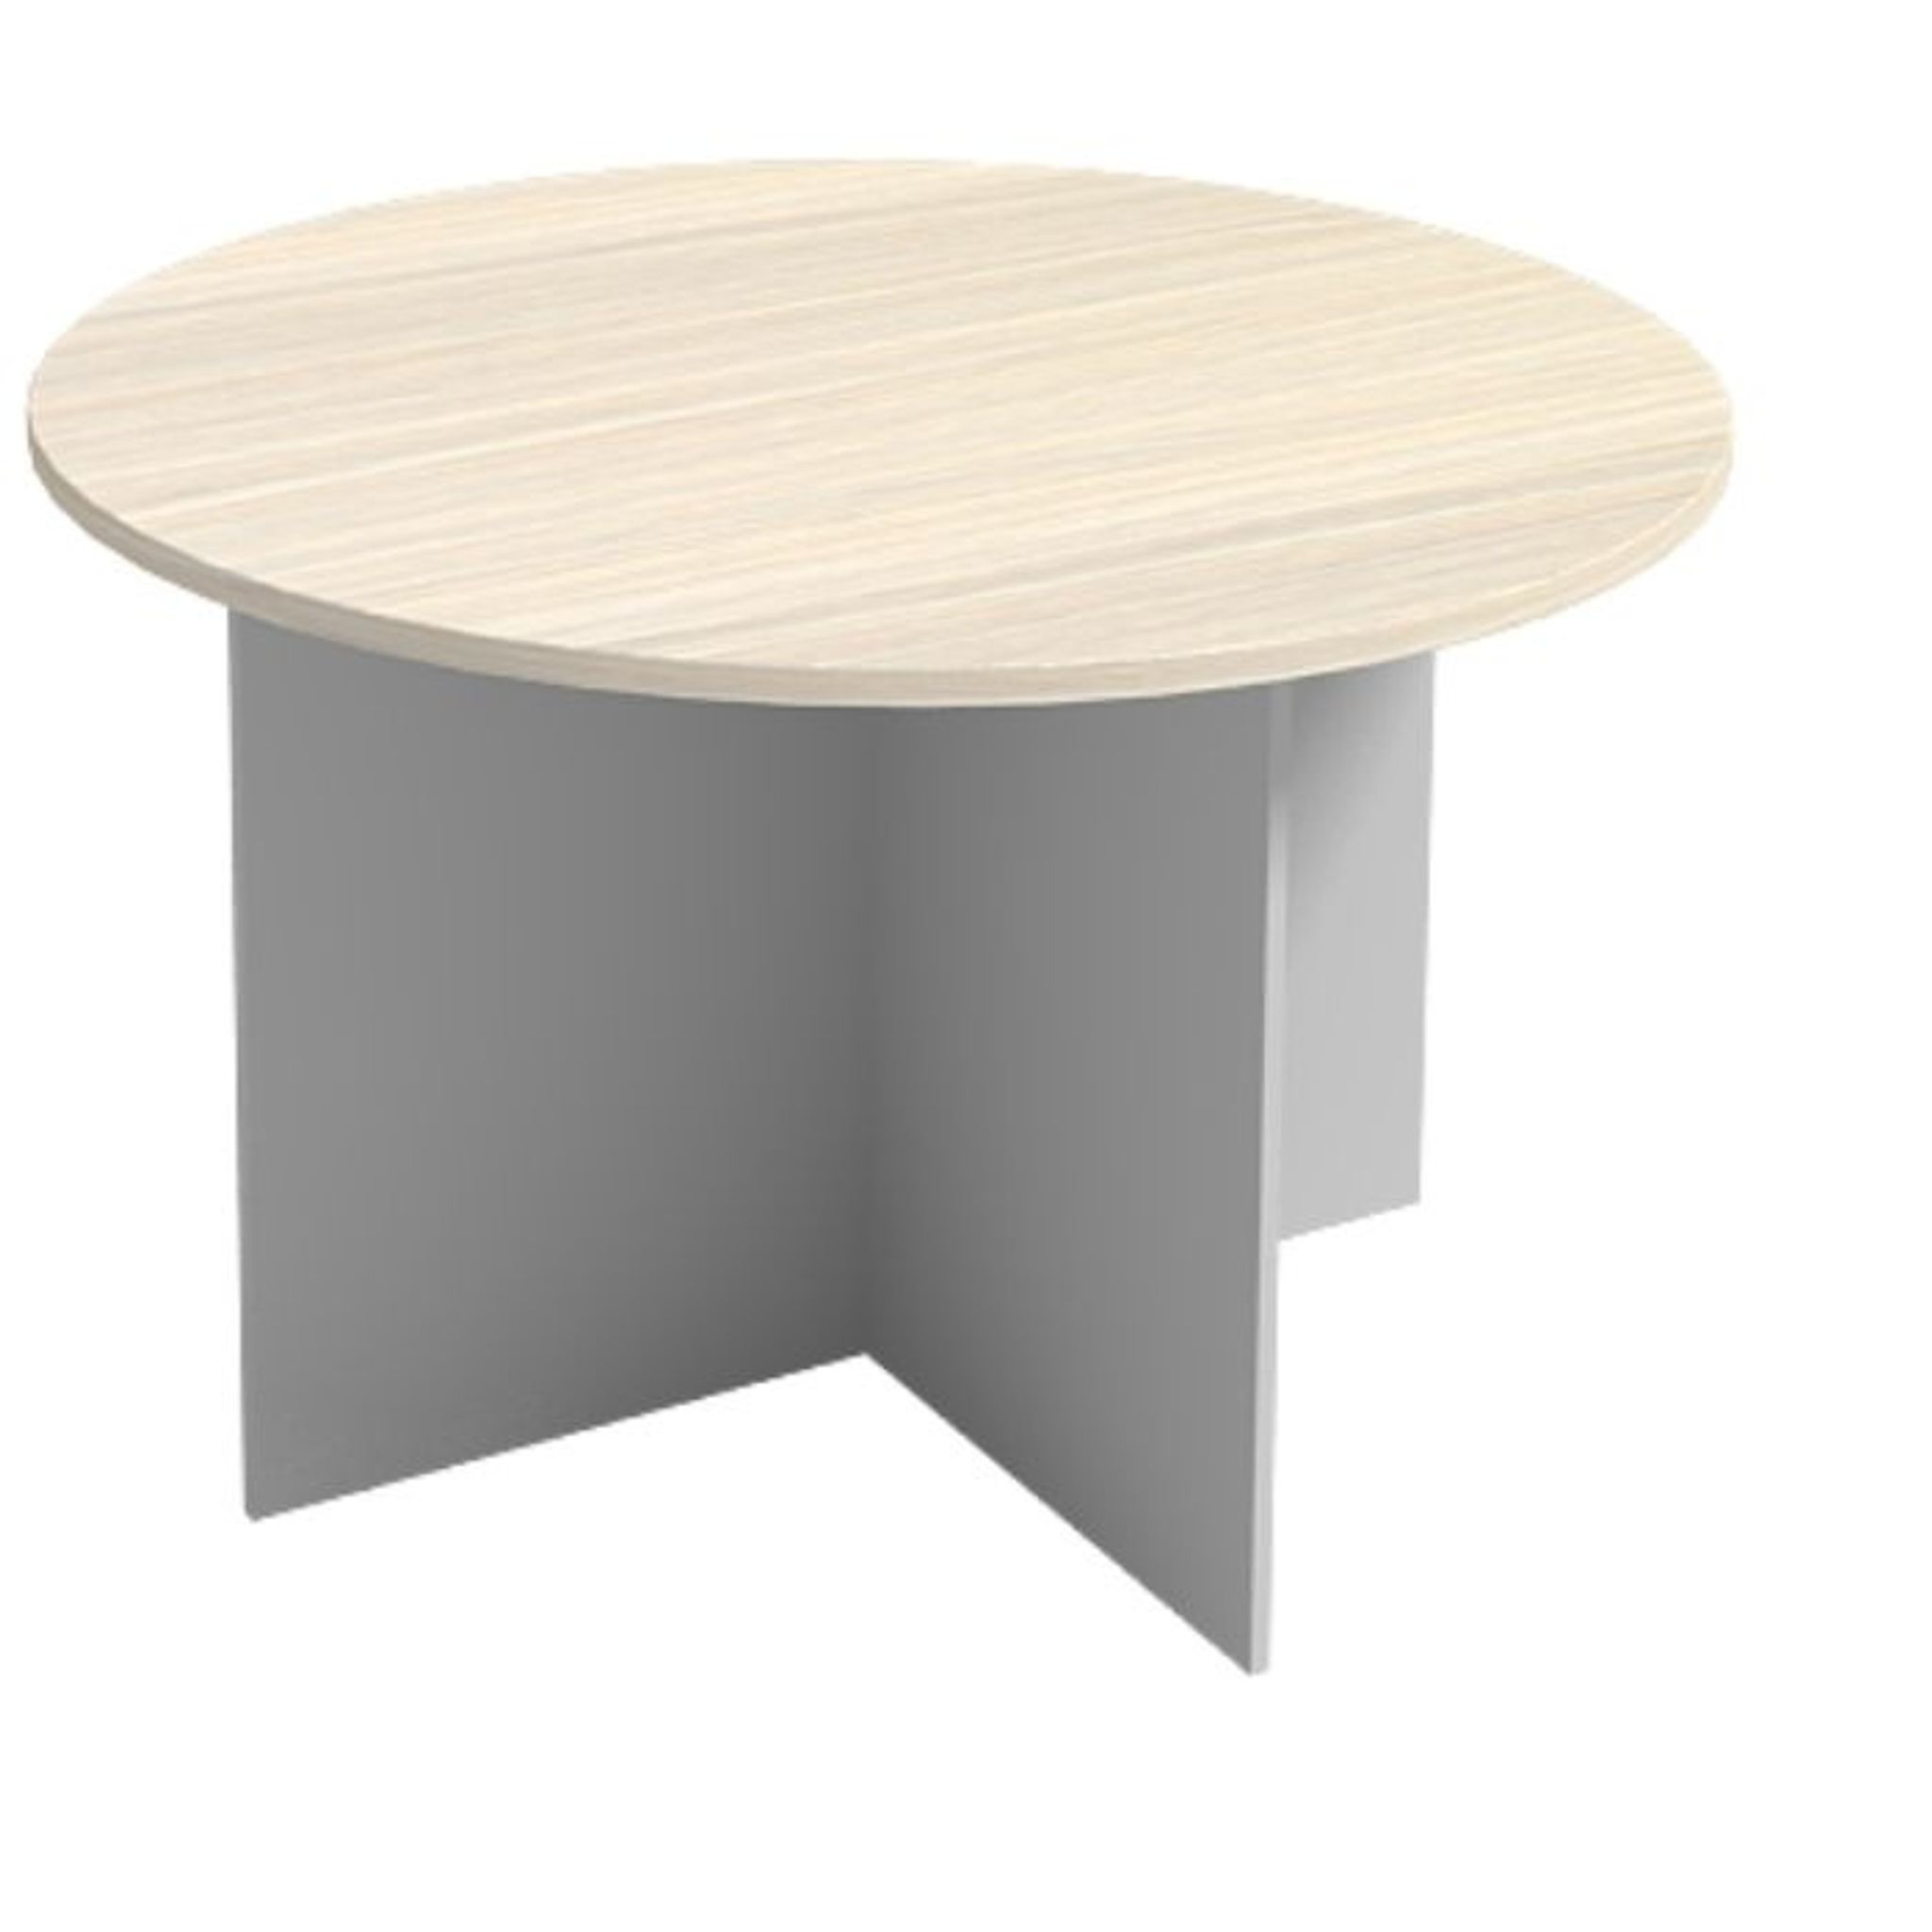 Jednací stůl s kulatou deskou PRIMO GRAY, průměr 1200 mm, šedá / bříza